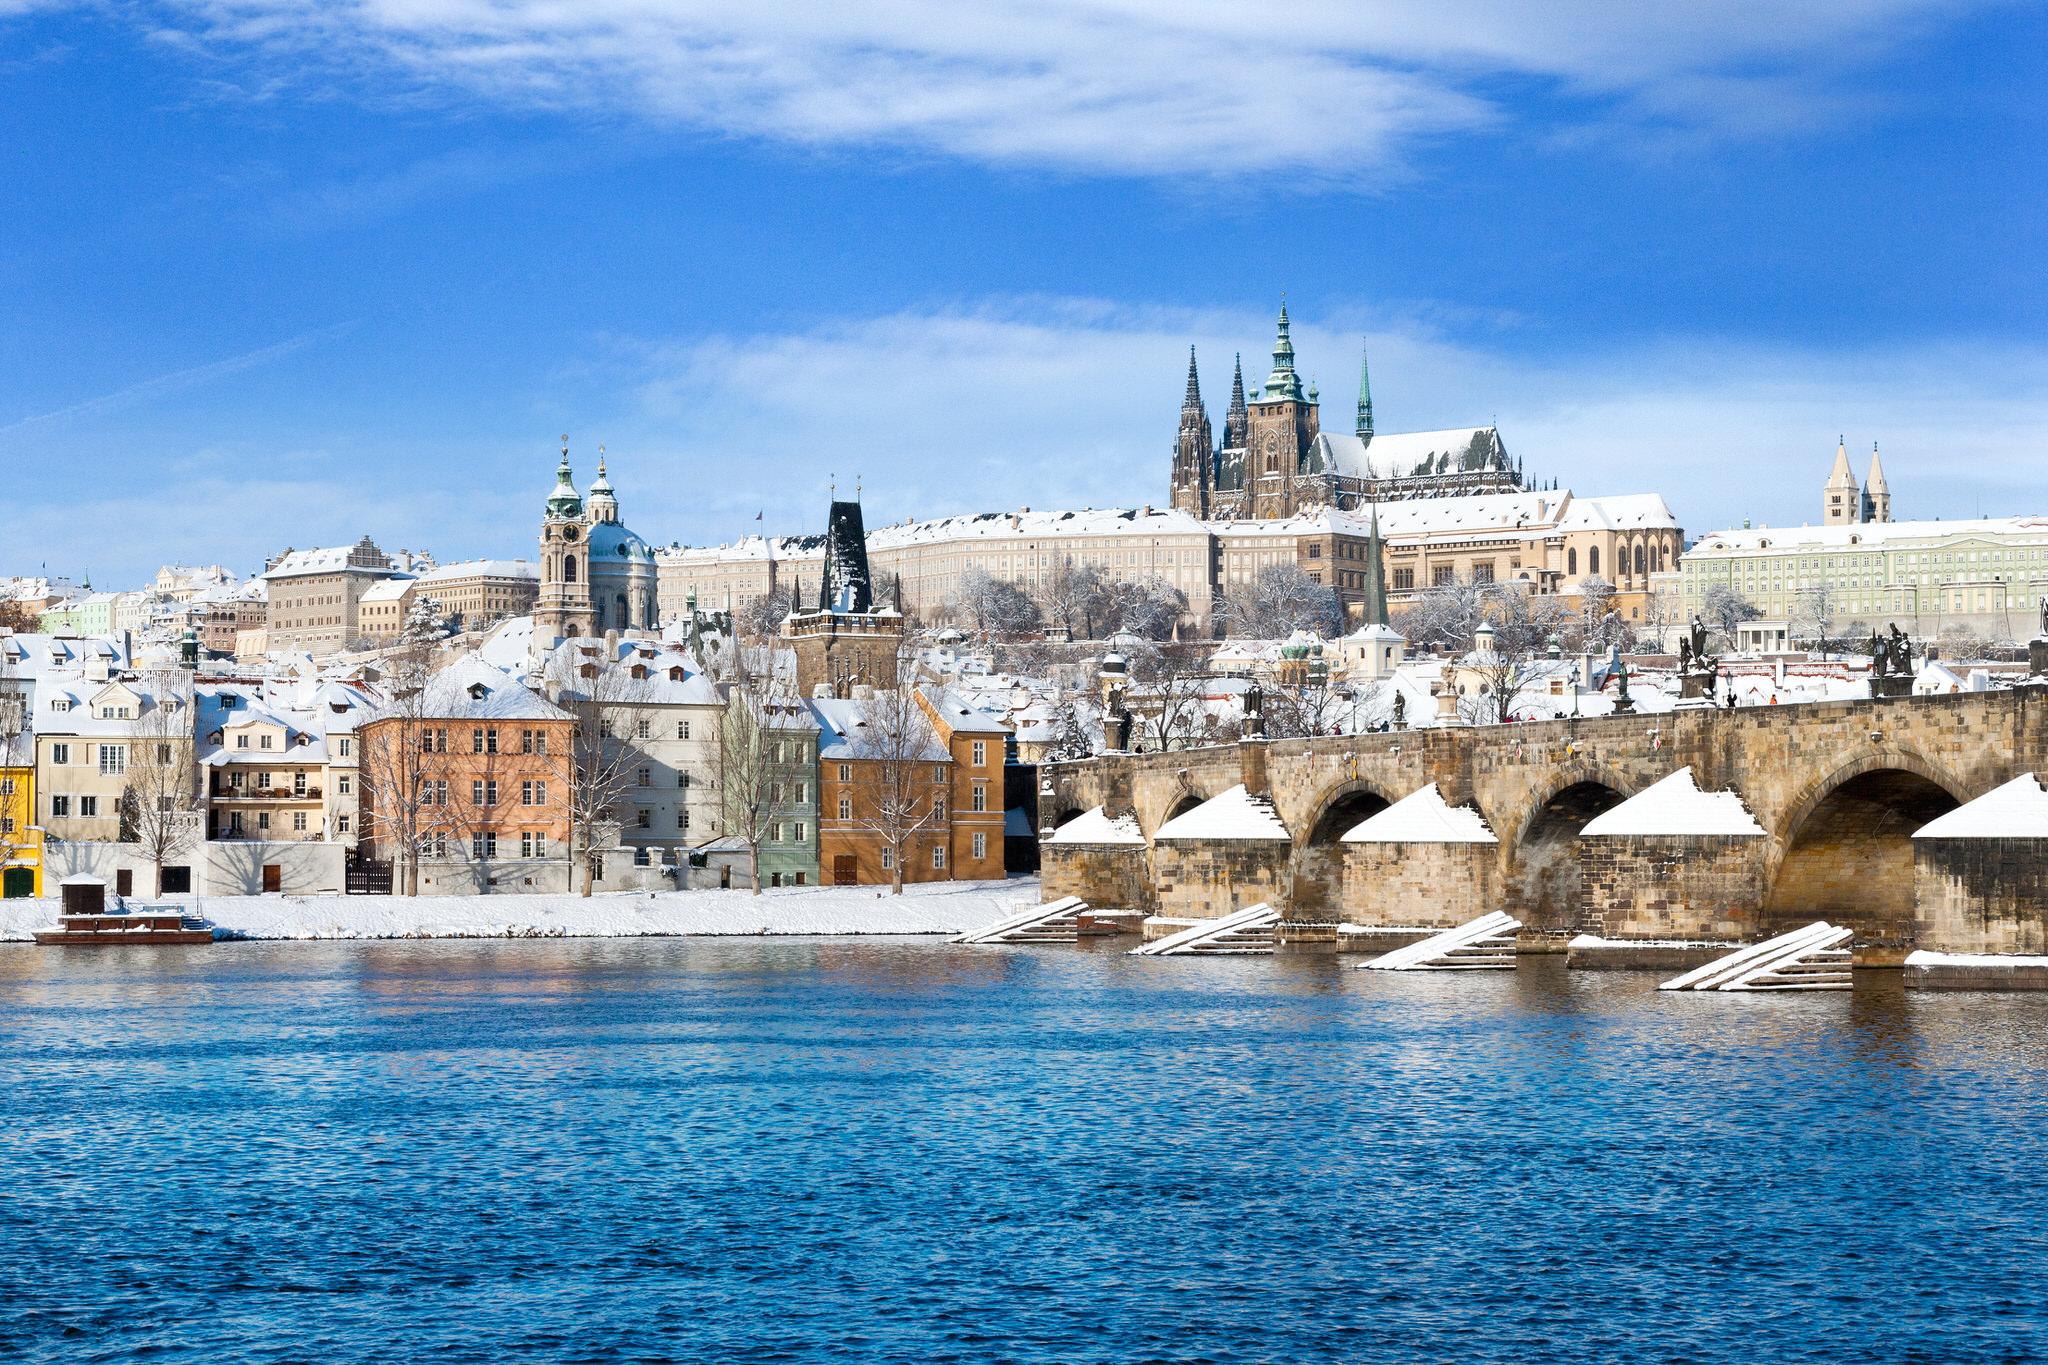 Горящие туры, из Санкт-Петербурга - — 35% на тур из СПб в Прагу в январе на 3 ночи за 12500 рублей с человека + завтрак!